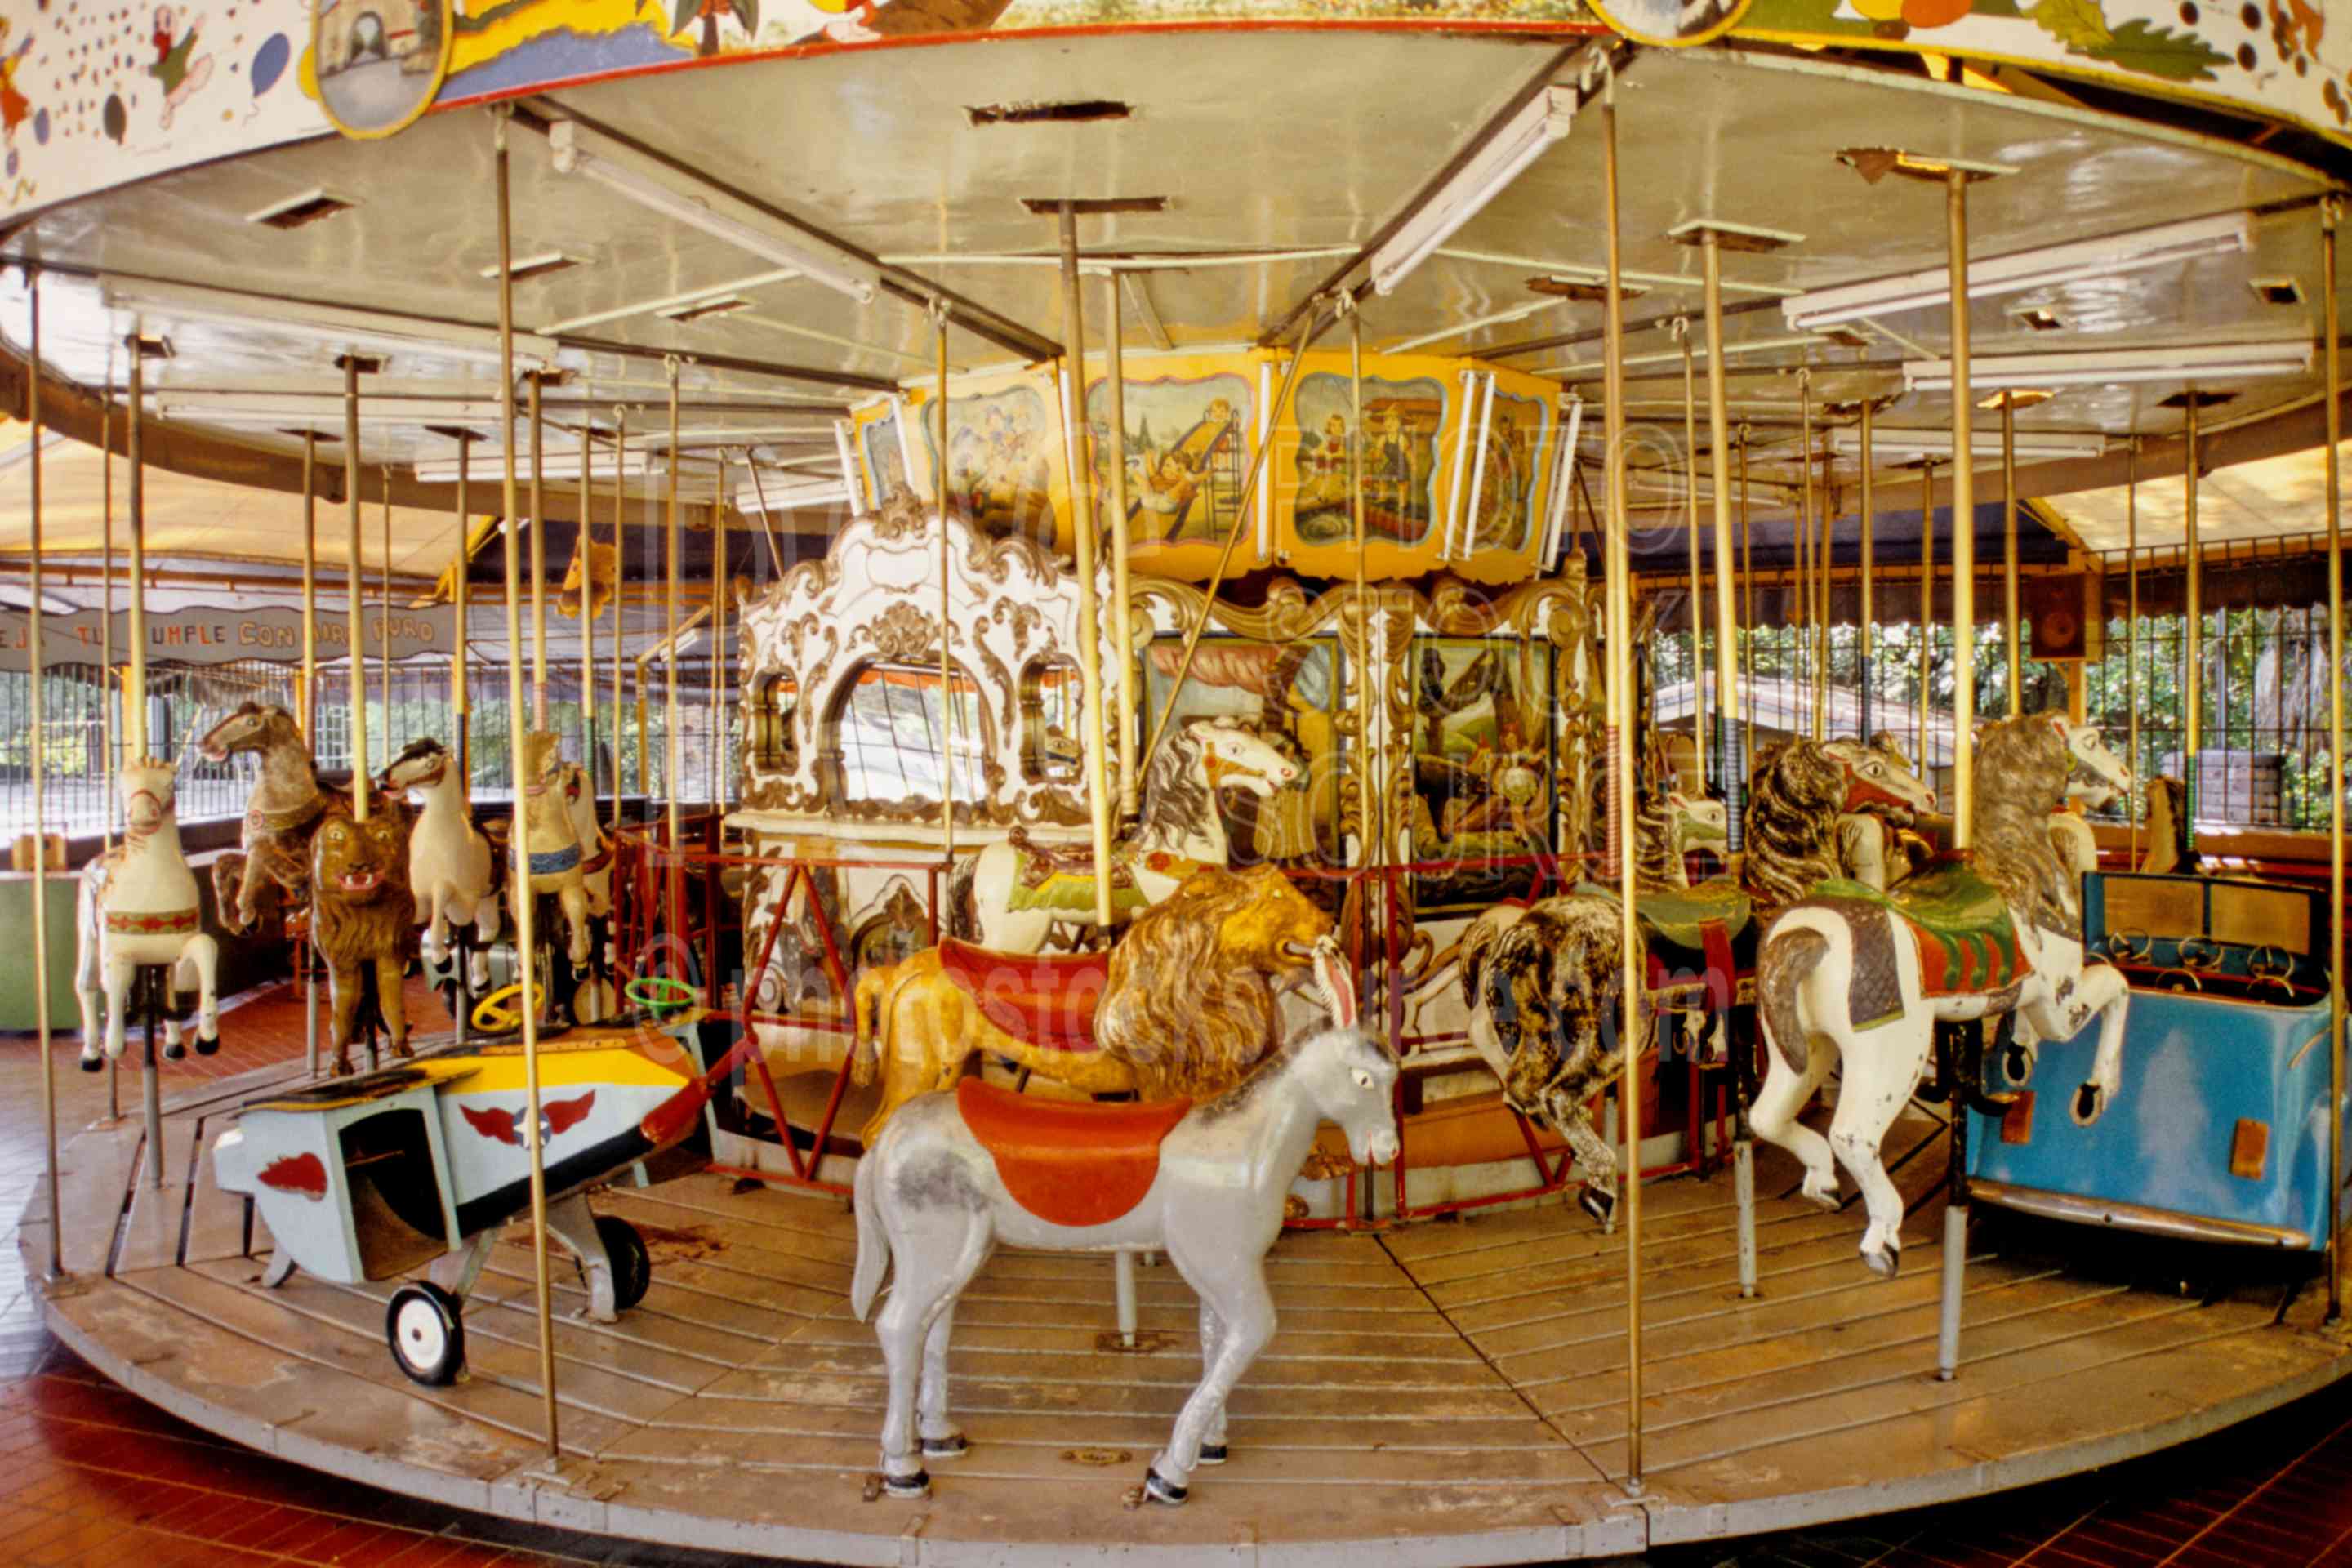 Carousel,parque san martin